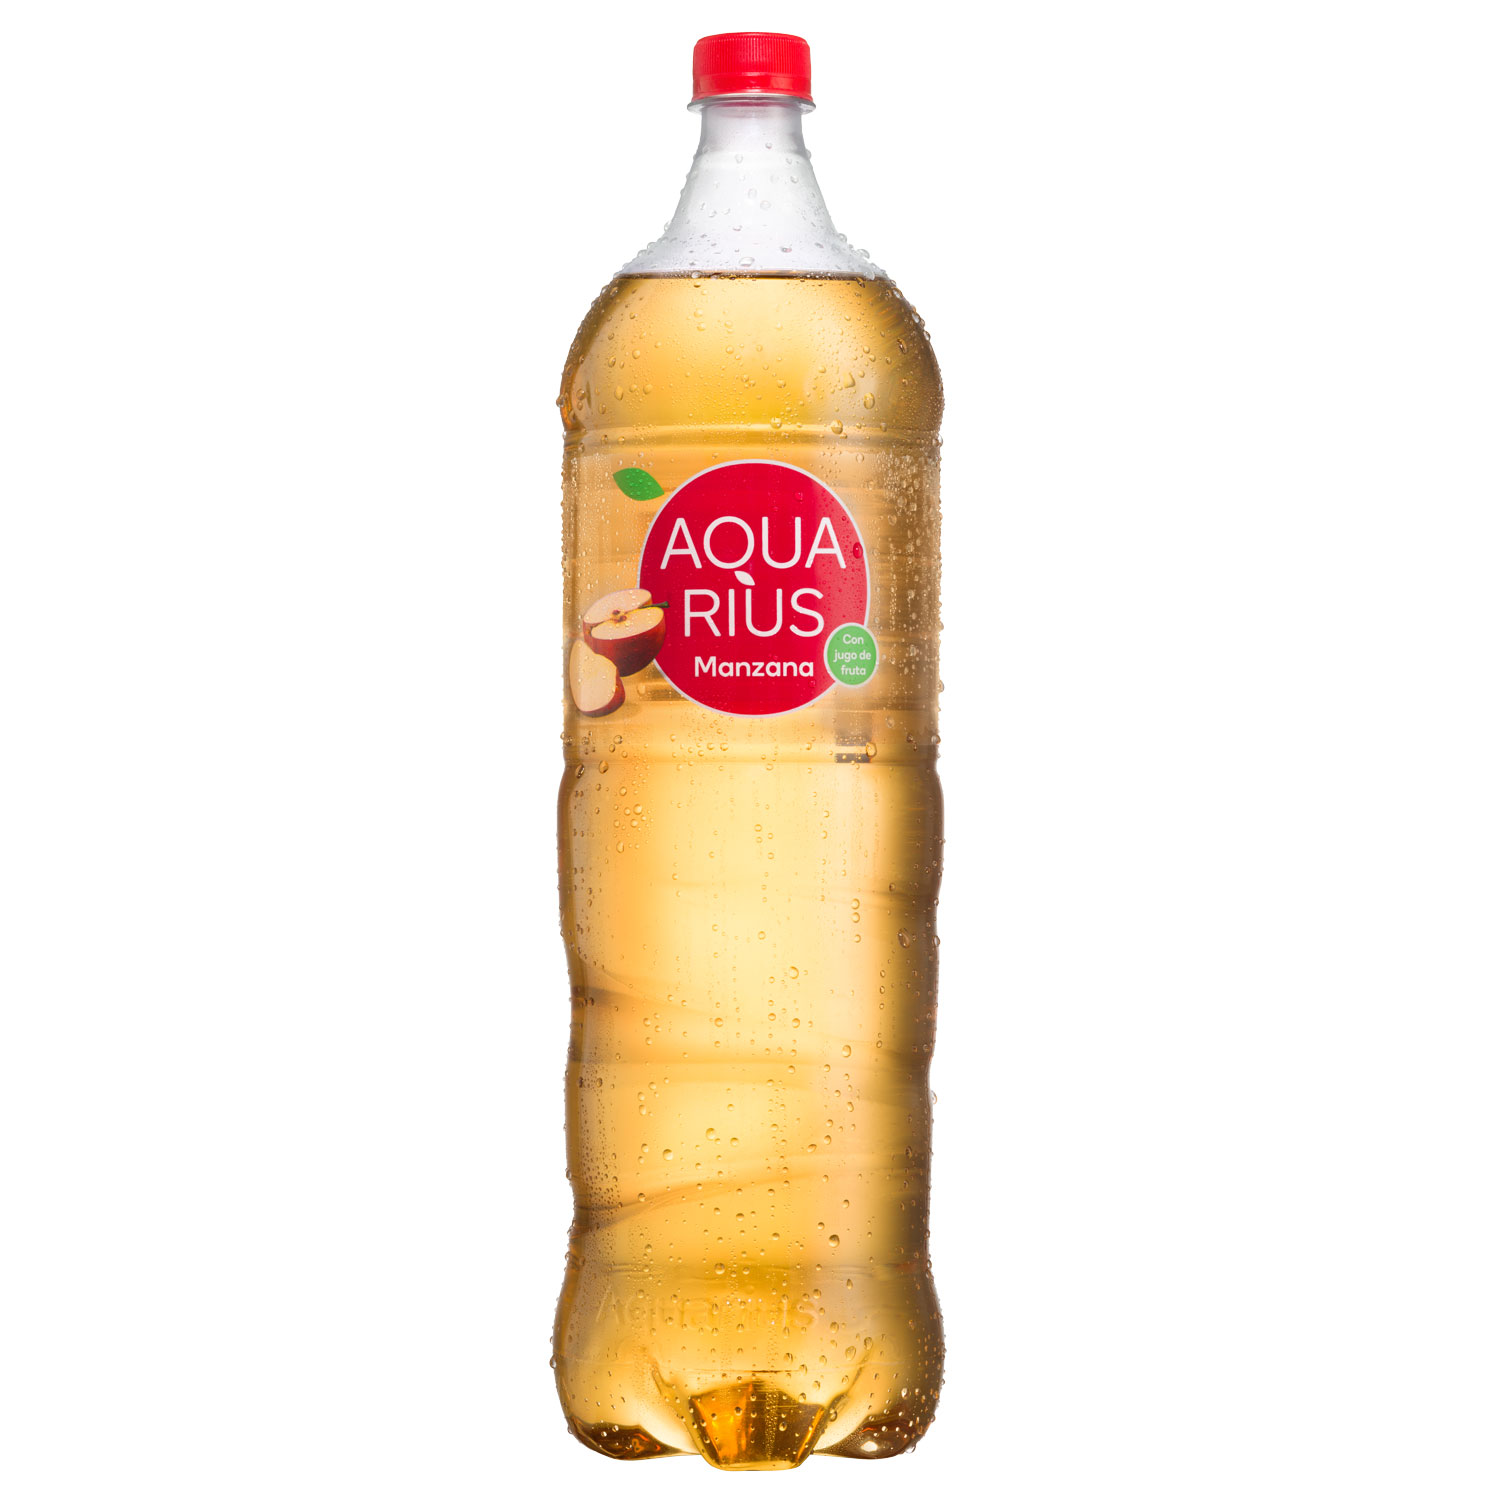 Botella de Aquarius Manzana Mediana